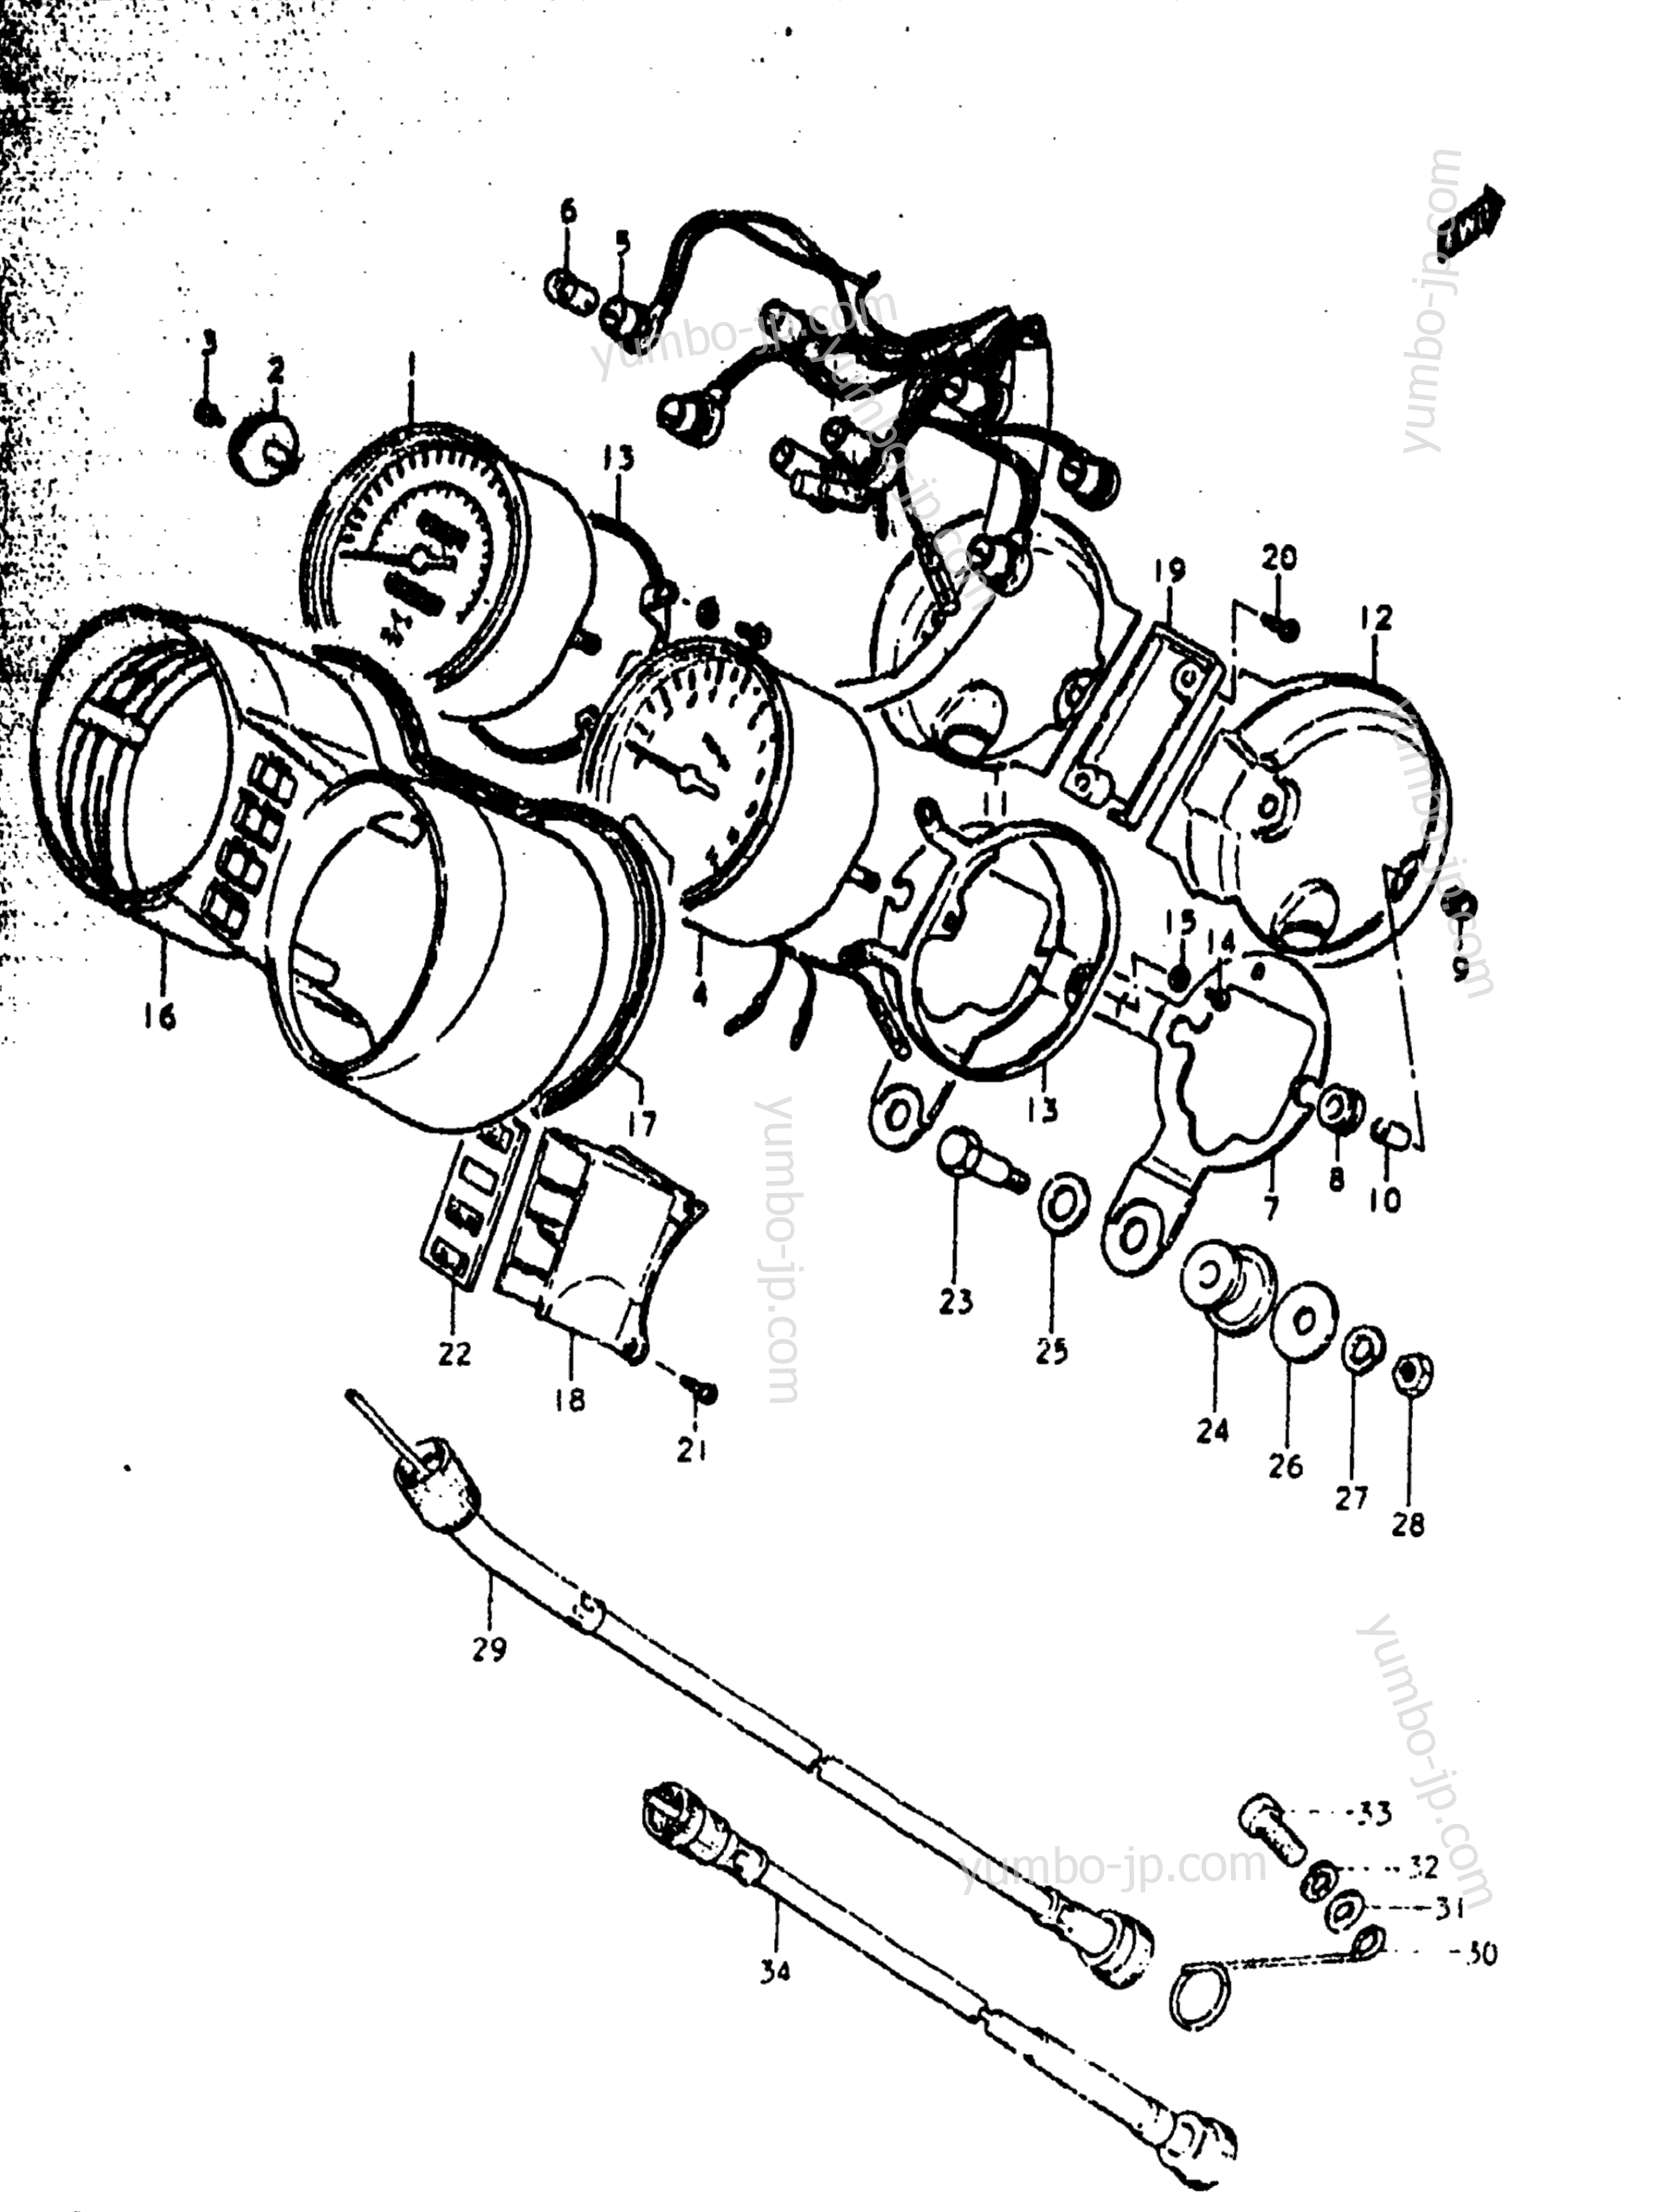 Speedometer - Tachometer для мотоциклов SUZUKI GS1000 1979 г.